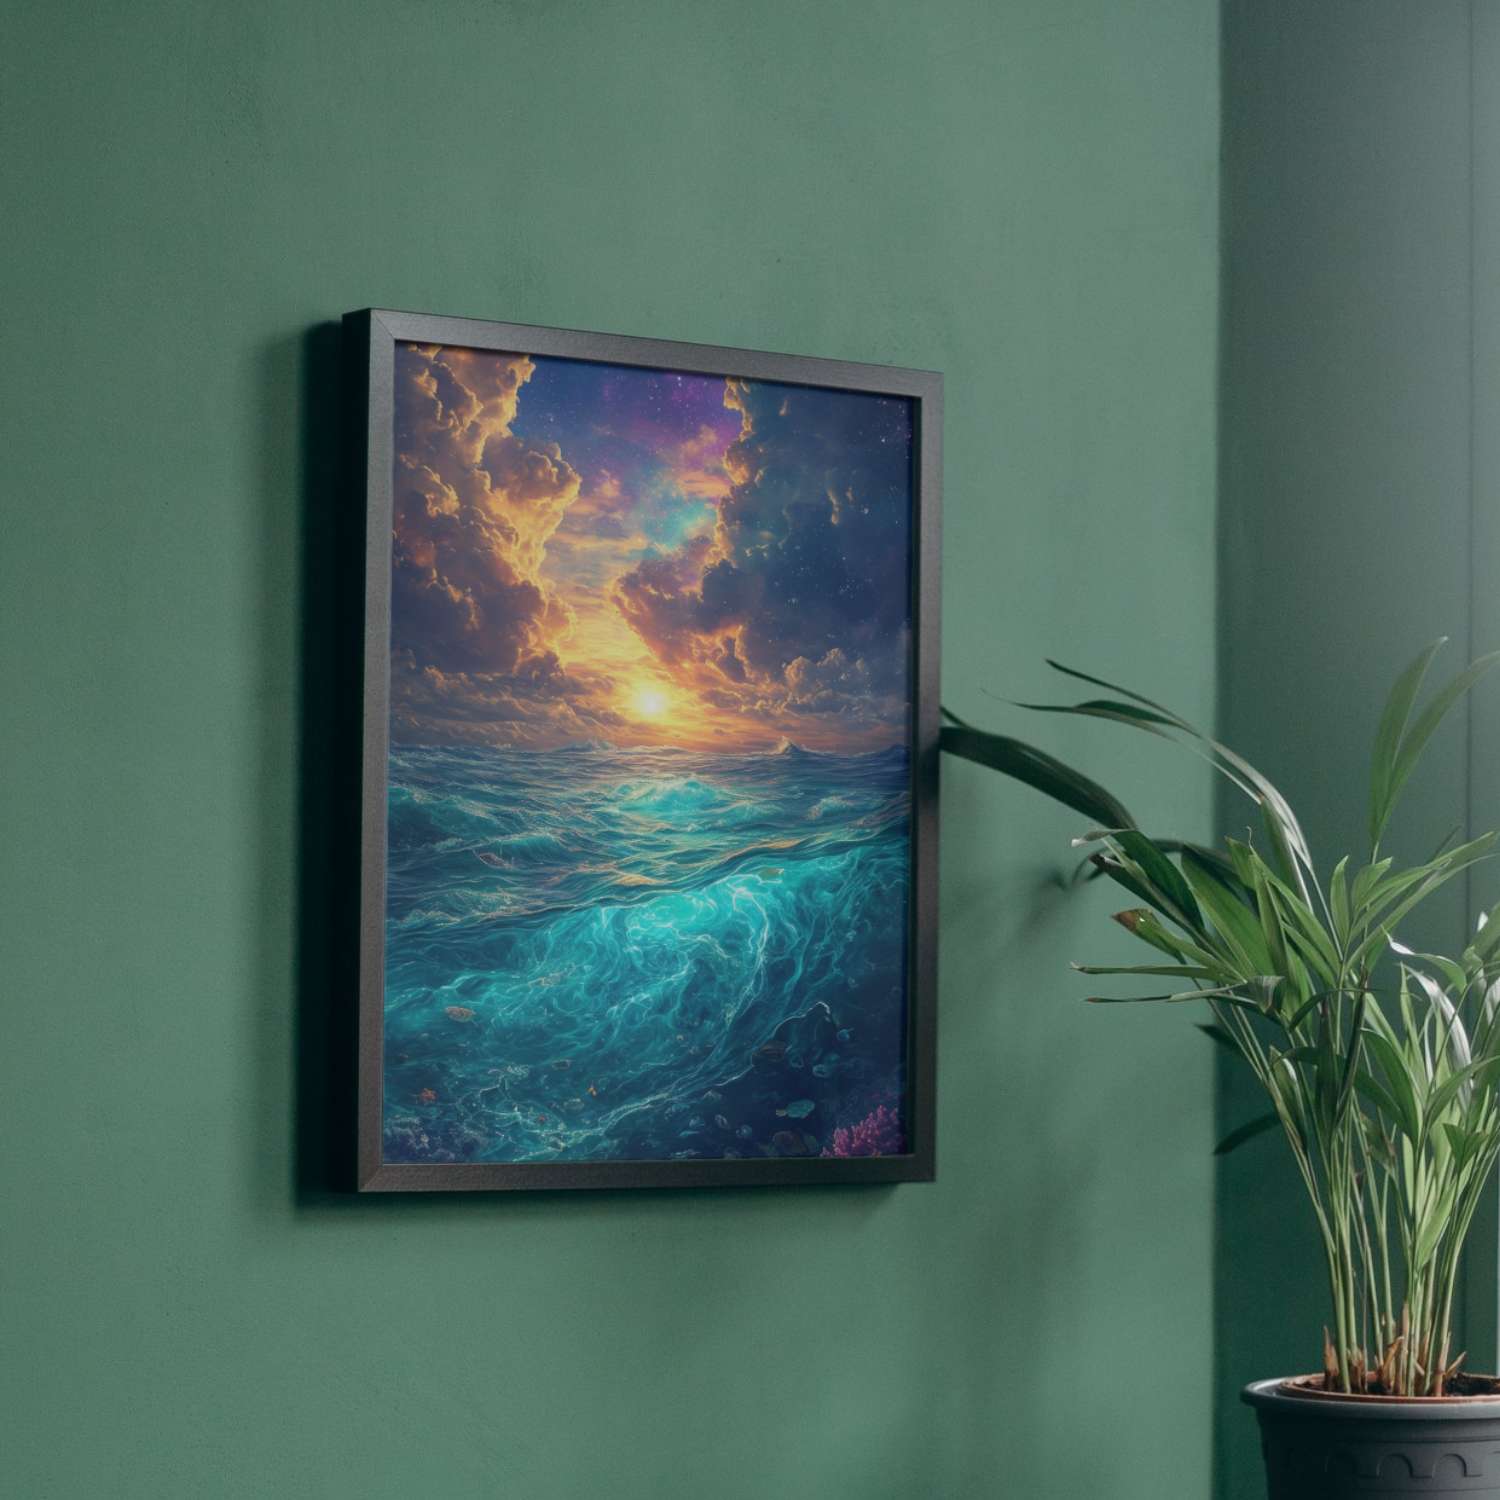 Cette toile capture l'essence mystique de l'océan, un mariage céleste entre les cieux flamboyants et les profondeurs émeraude